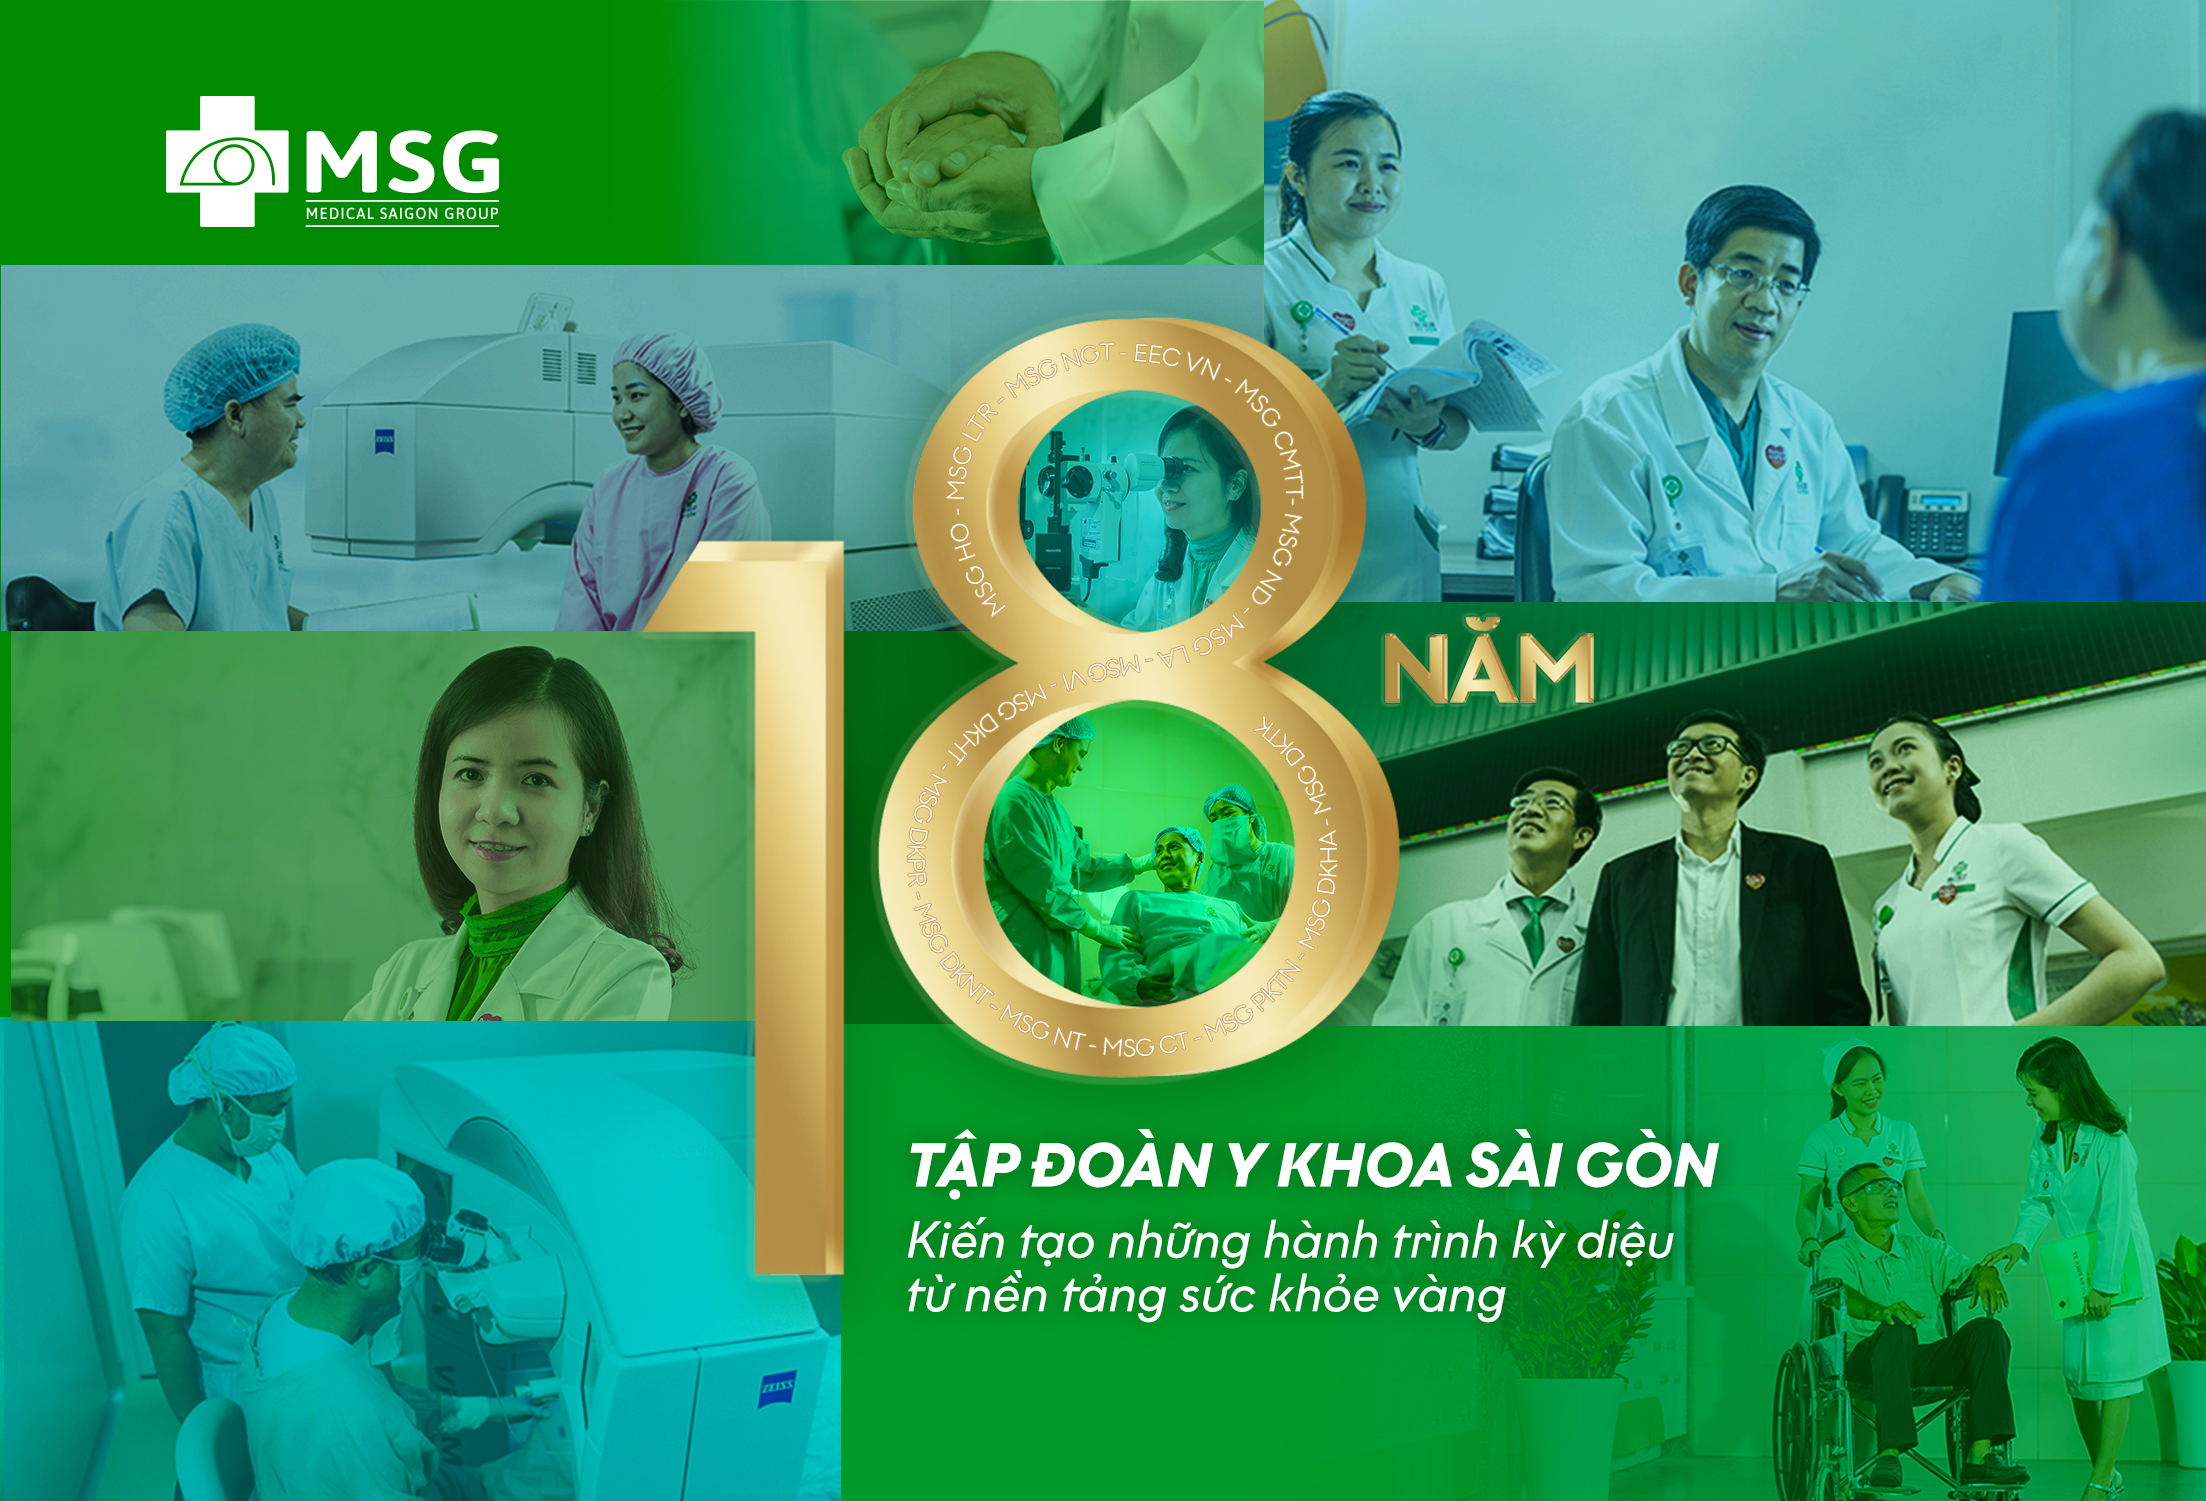 Chúc mừng kỷ niệm 18 năm thành lập Tập đoàn Y khoa Sài Gòn